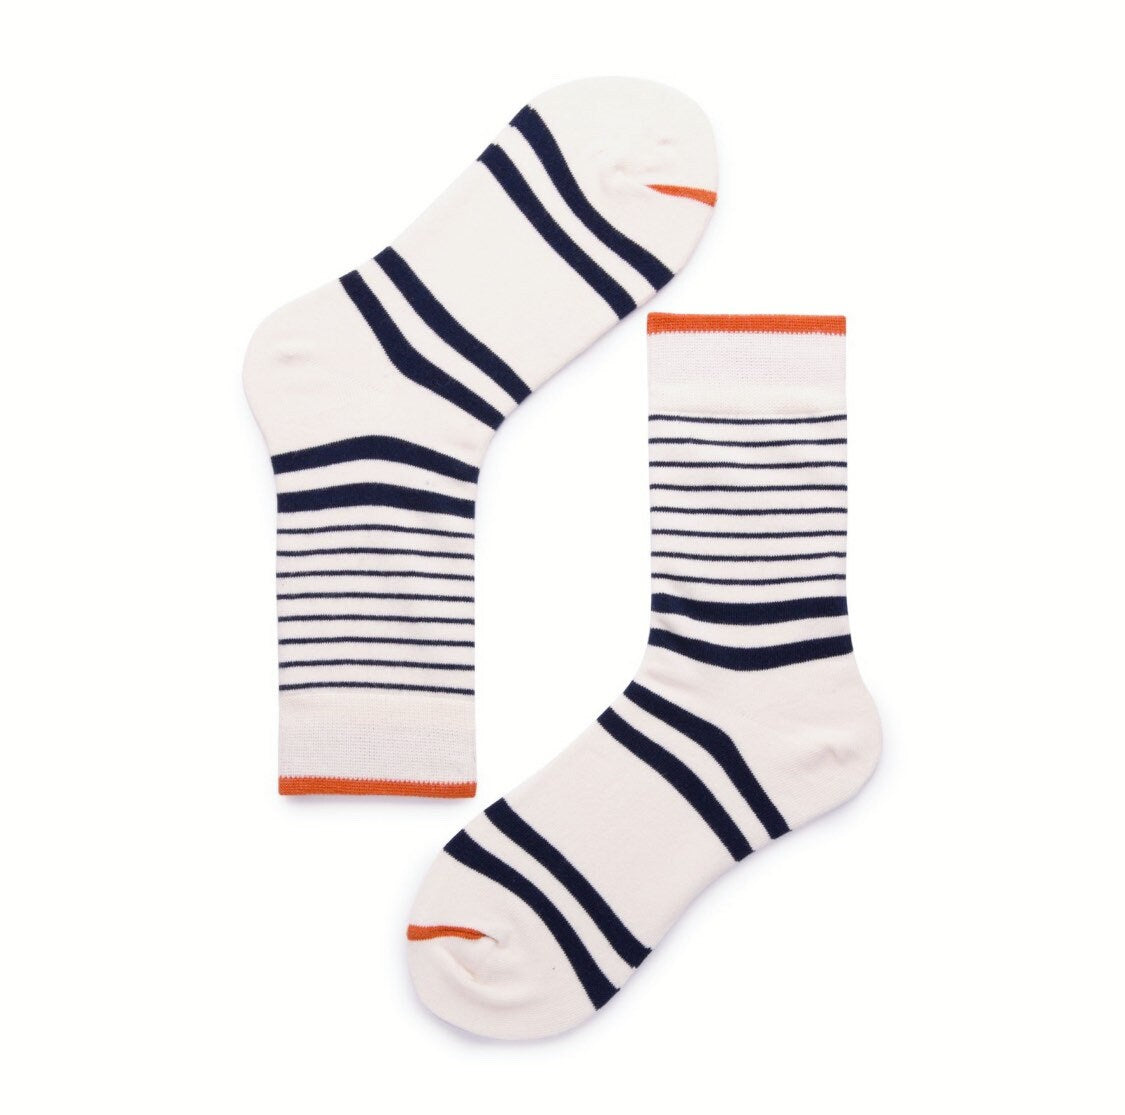 Miss June’s, Women’s Cotton socks,Cool socks, colorful socks, striped socks,patterned socks, design socks,unisex socks